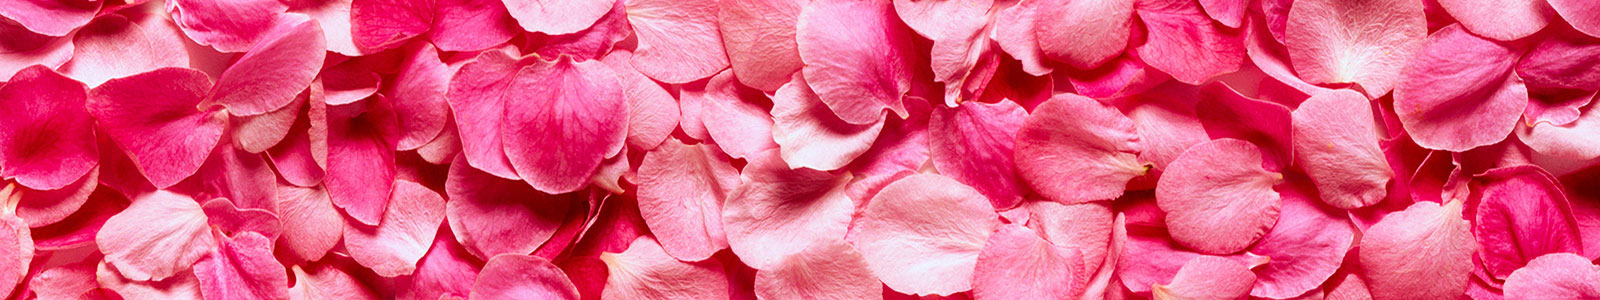 №977 - Розовые насыщенные лепестки розы